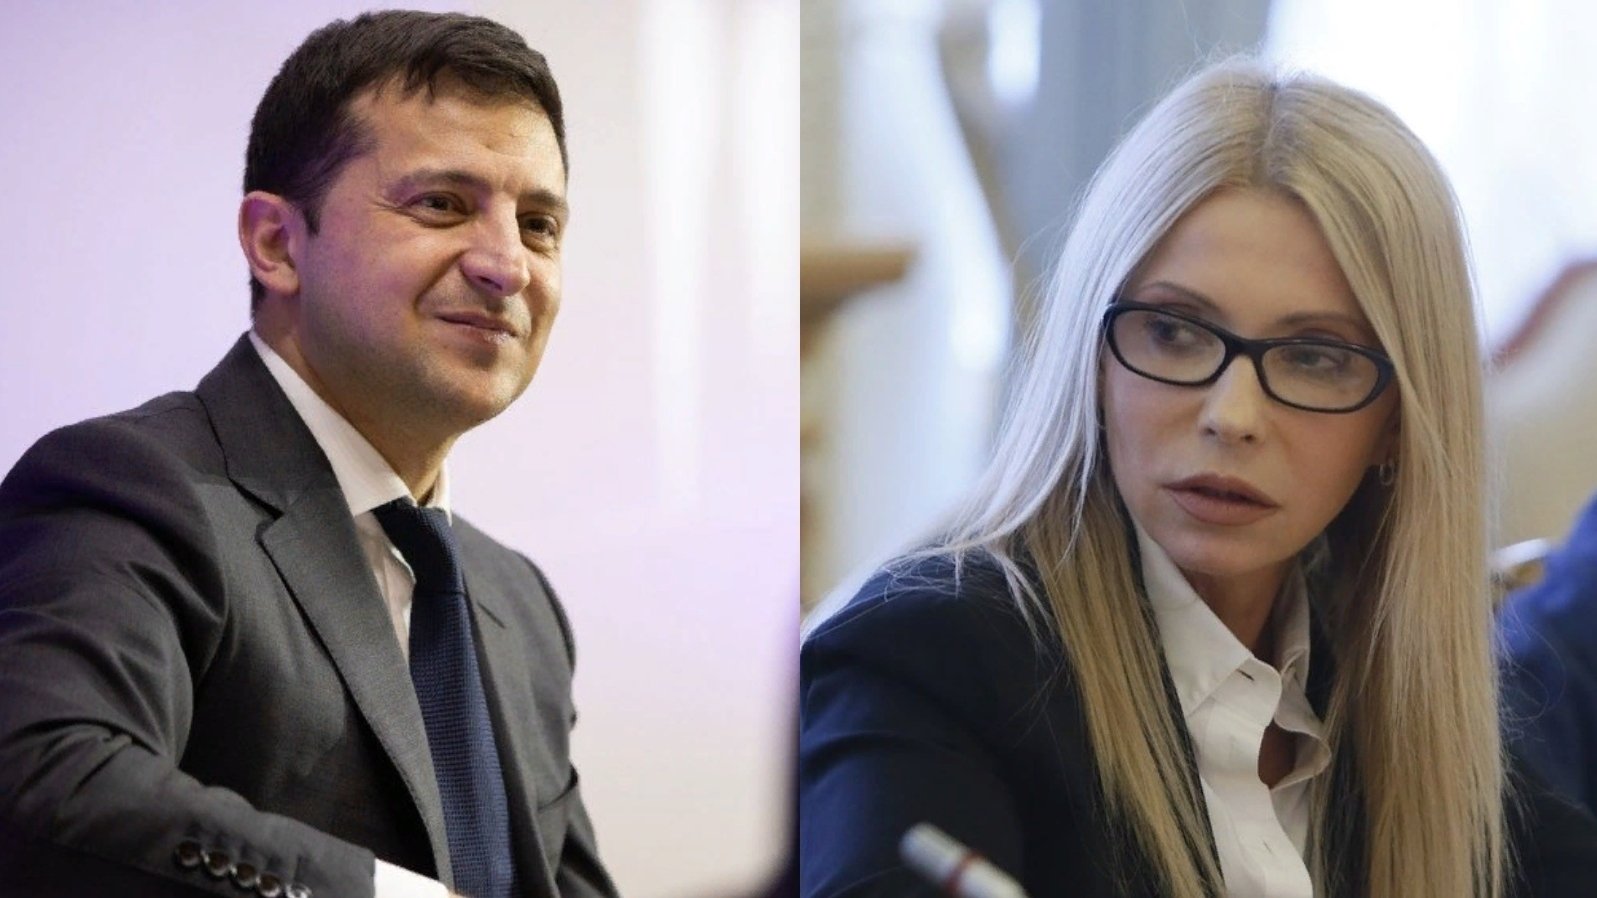 Тимошенко без истерик и эмоций ответила Зеленскому - скандал набирает обороты